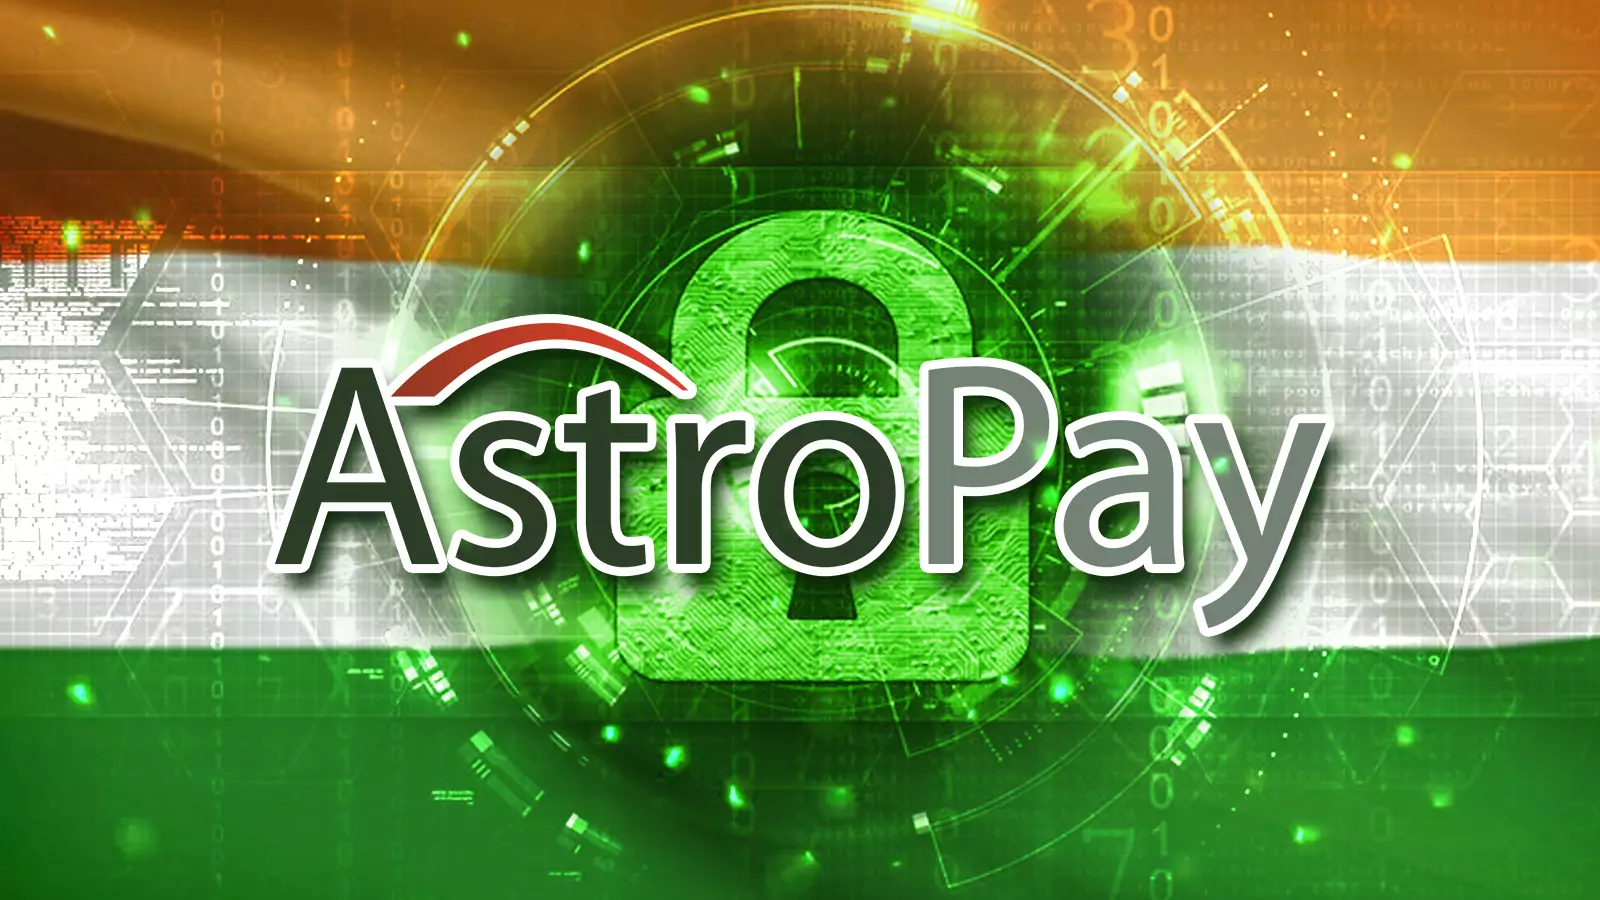 Astropay सिस्टम में आपकी व्यक्तिगत जानकारी और पैसा बिल्कुल सुरक्षित है।